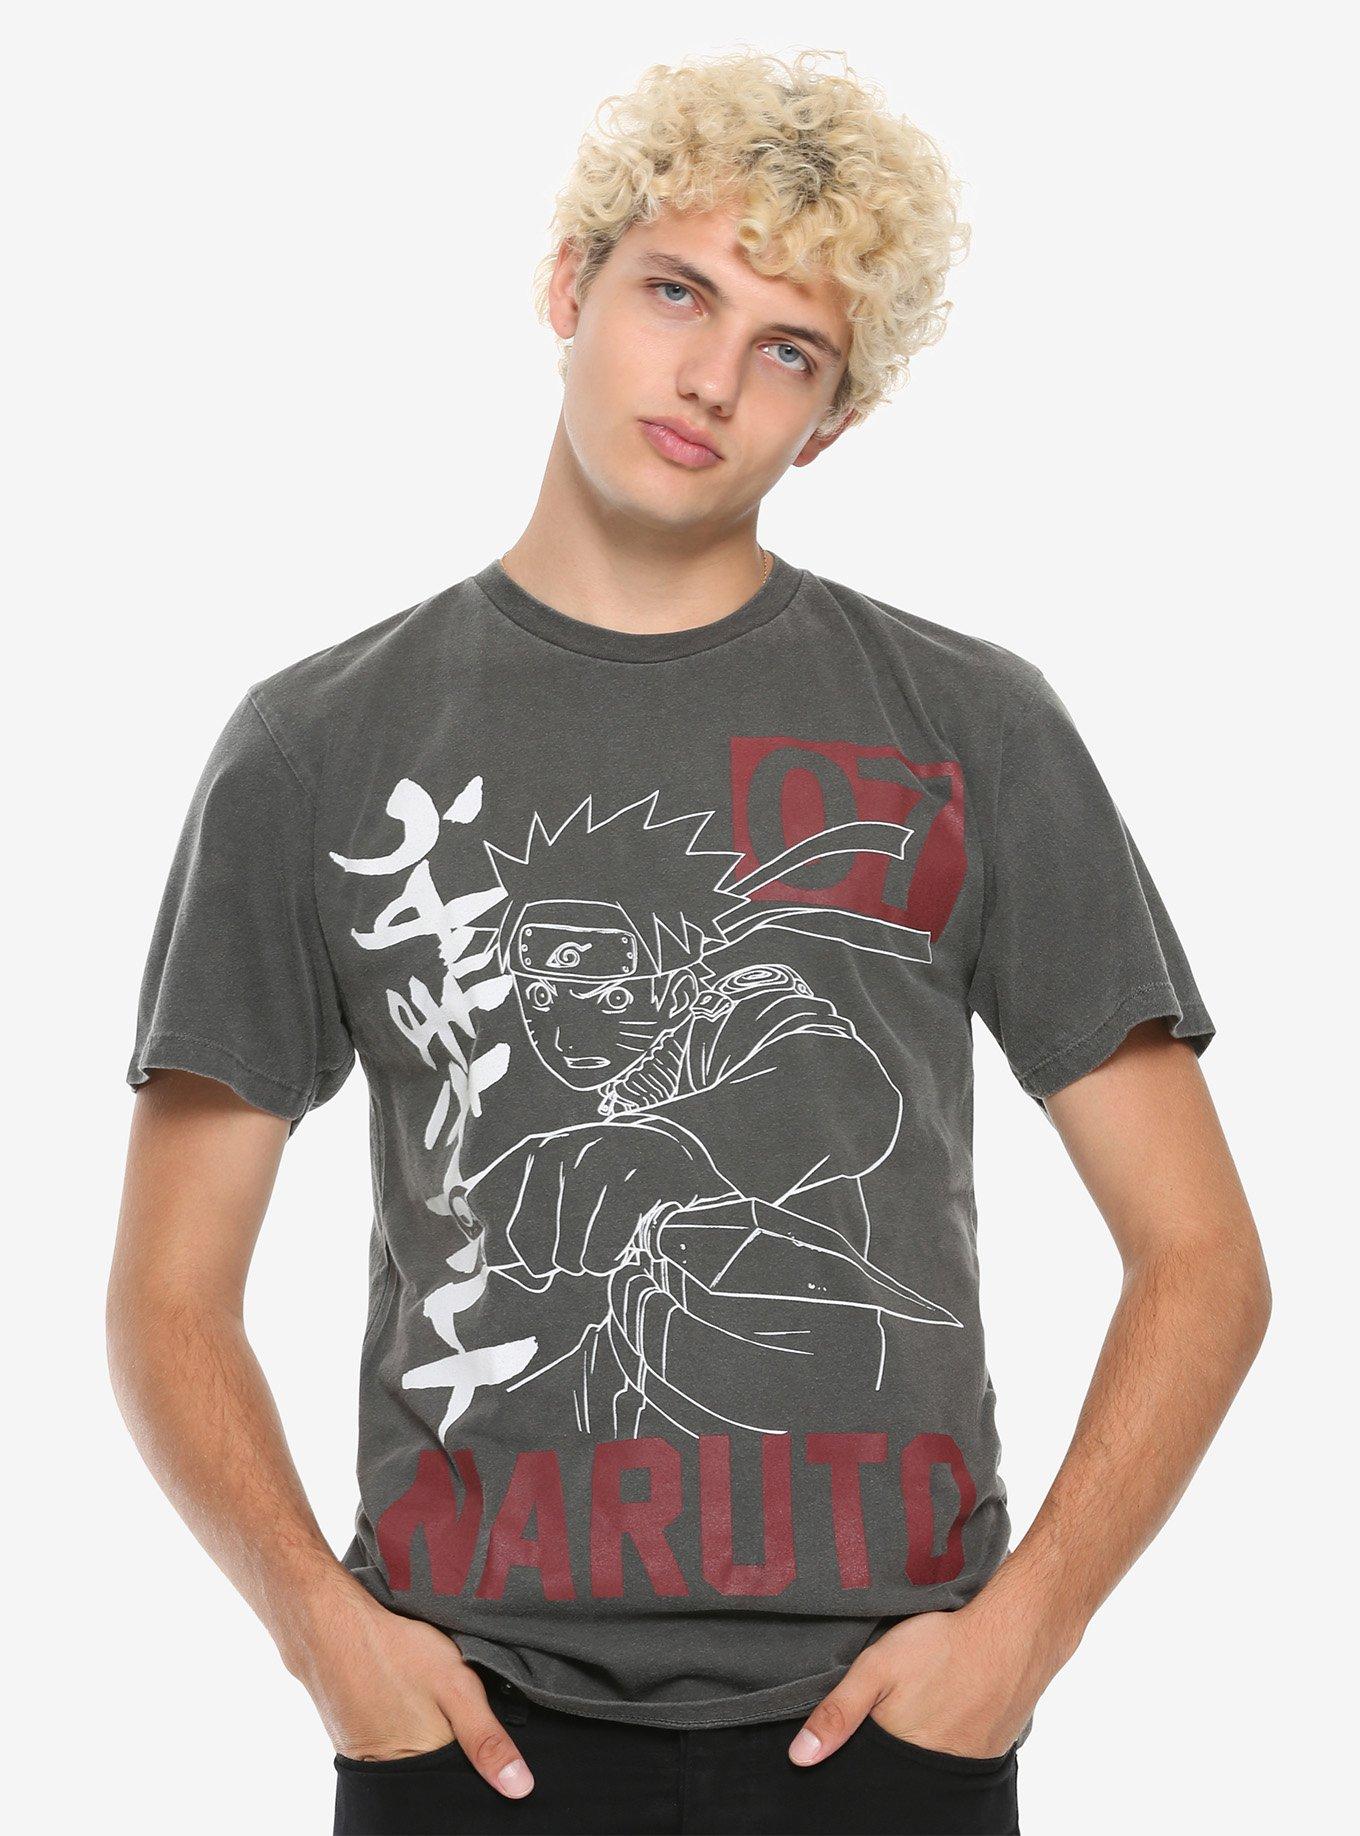 Naruto Shippuden Naruto 07 Faded T-Shirt, , alternate